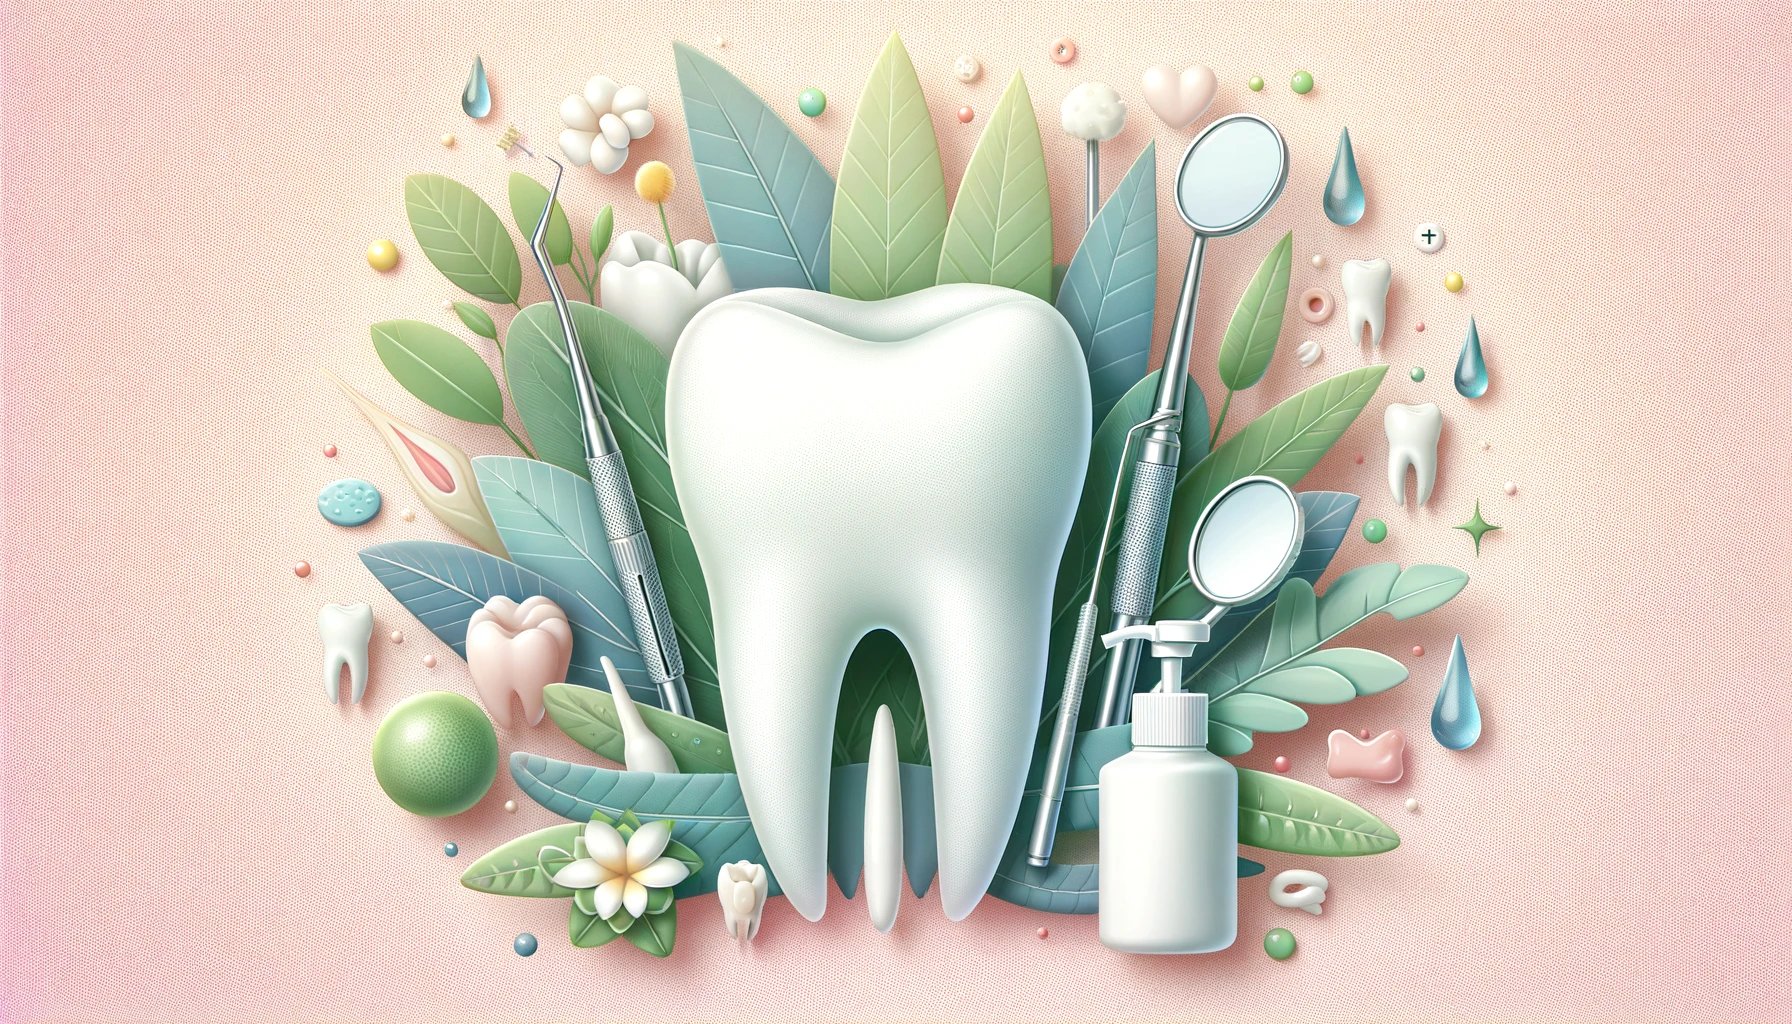 representación artística de la salud dental